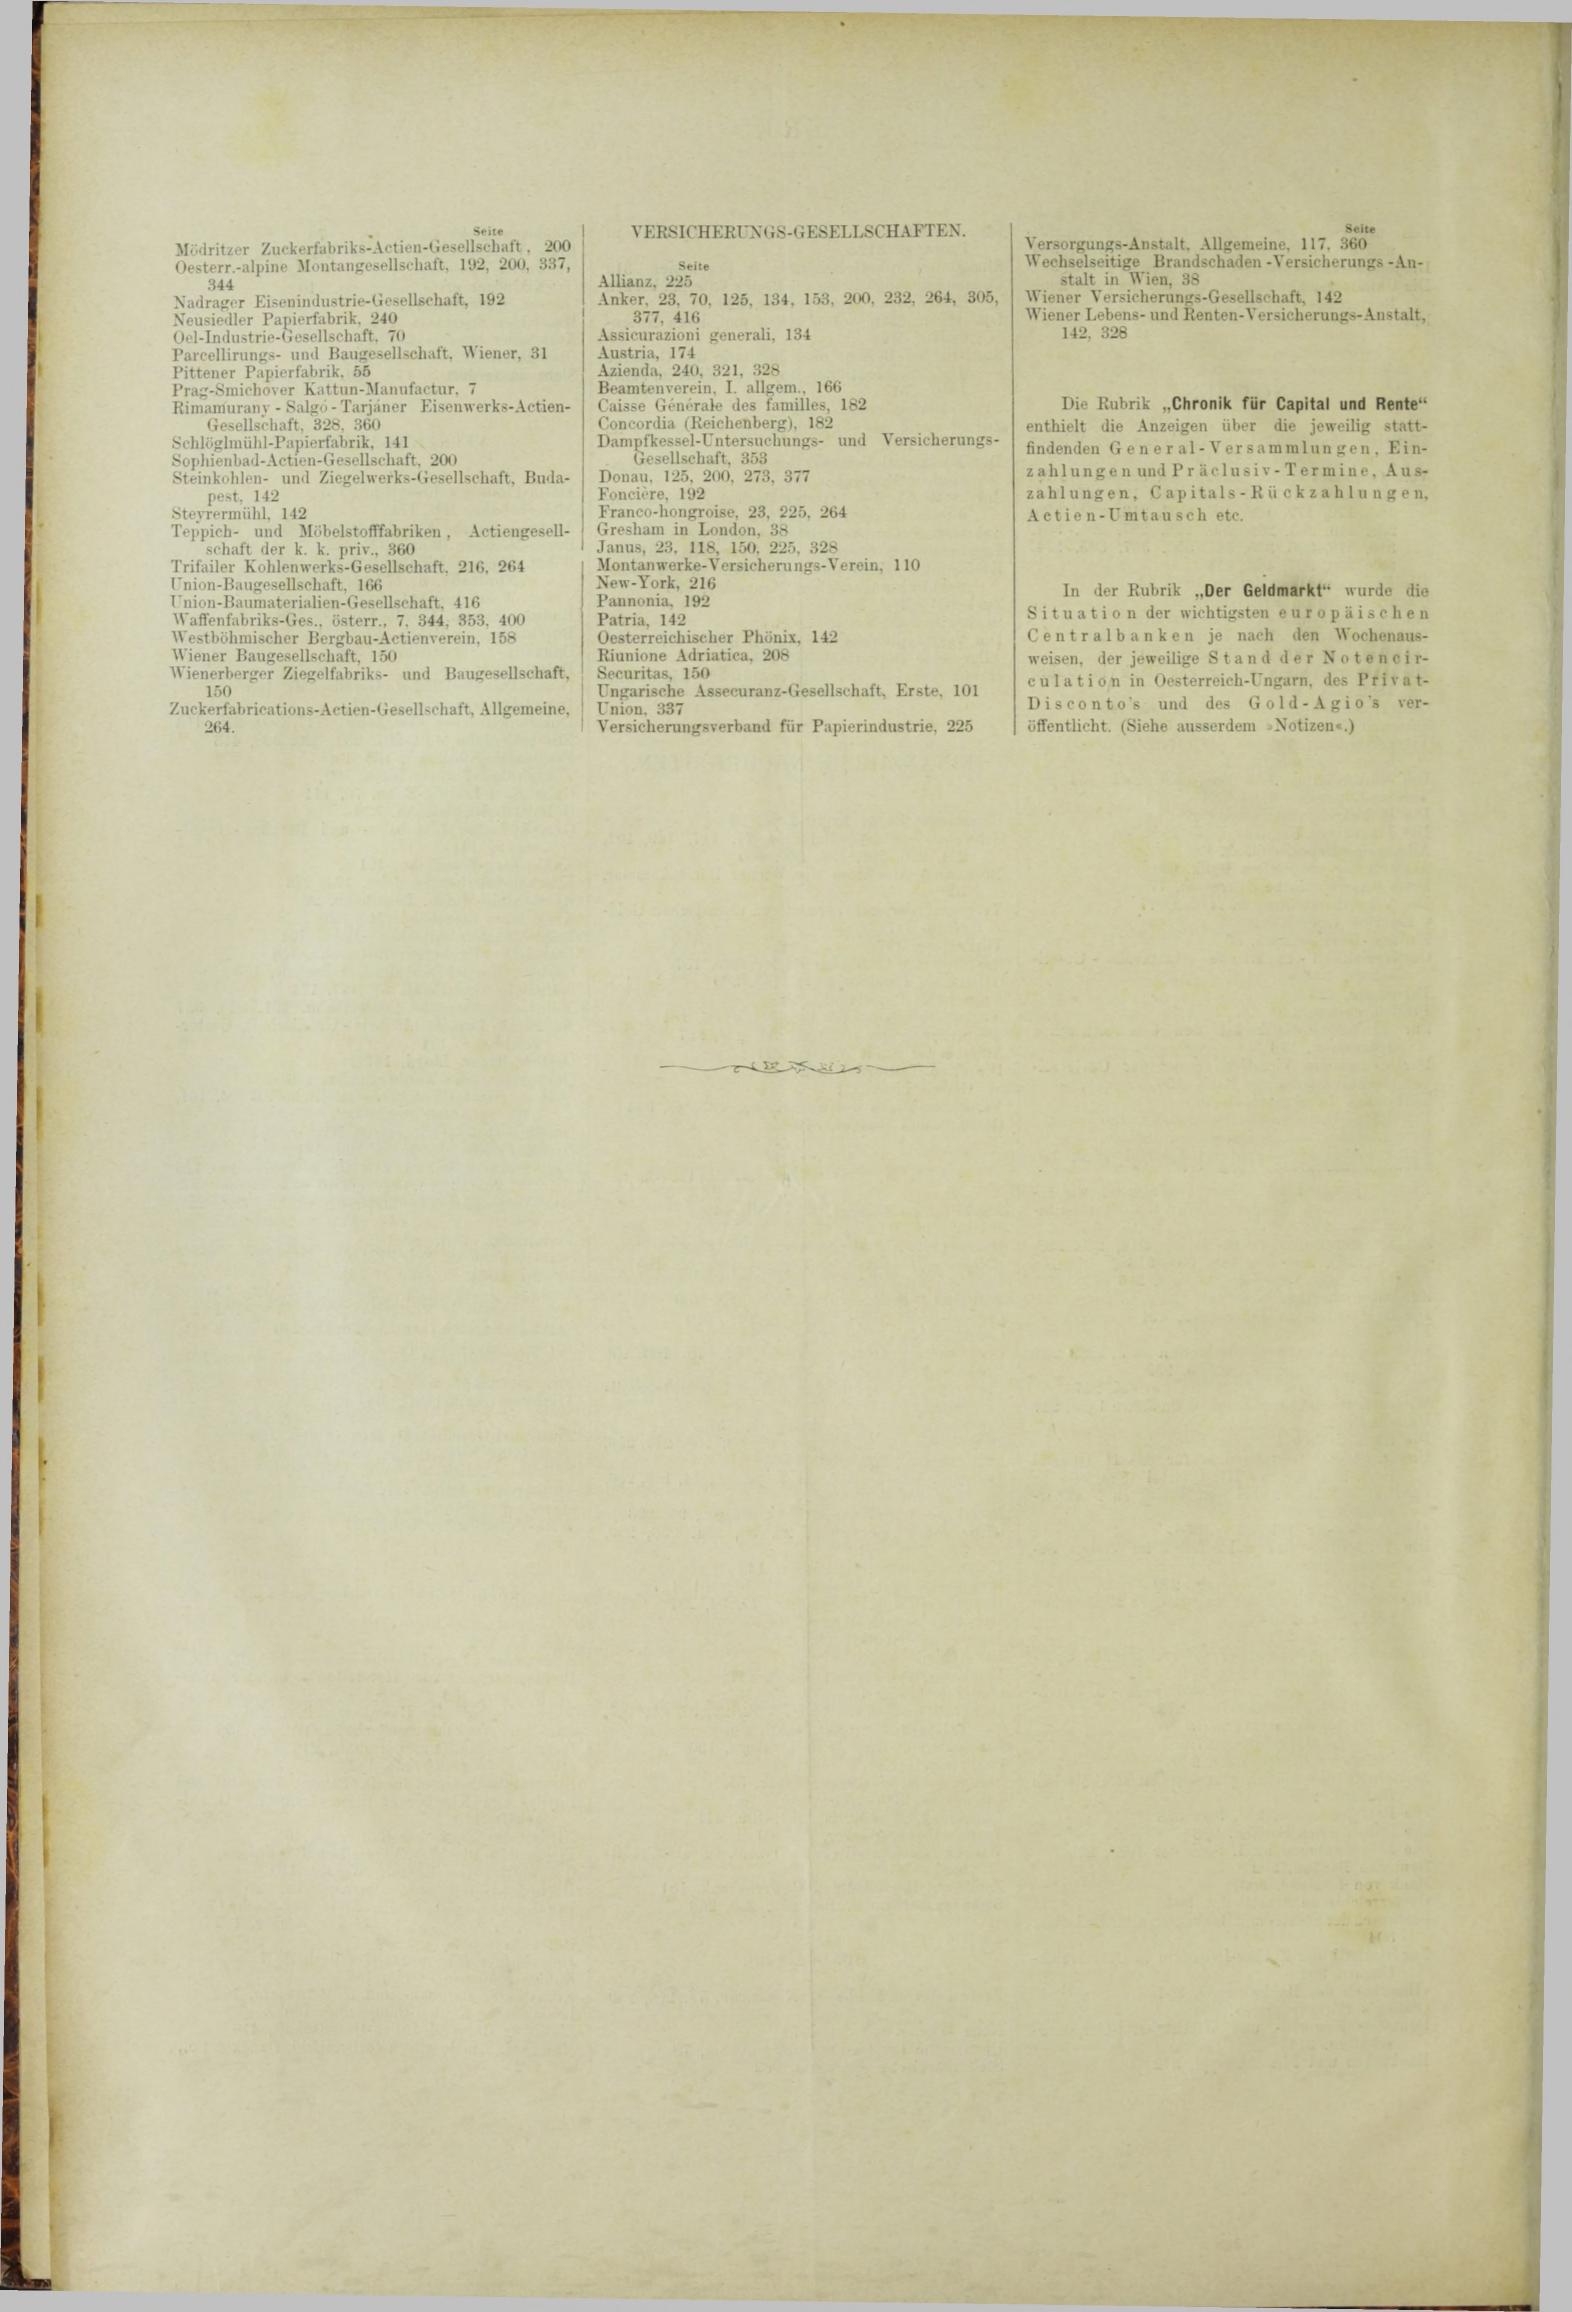 Der Tresor 10.05.1883 - Seite 12